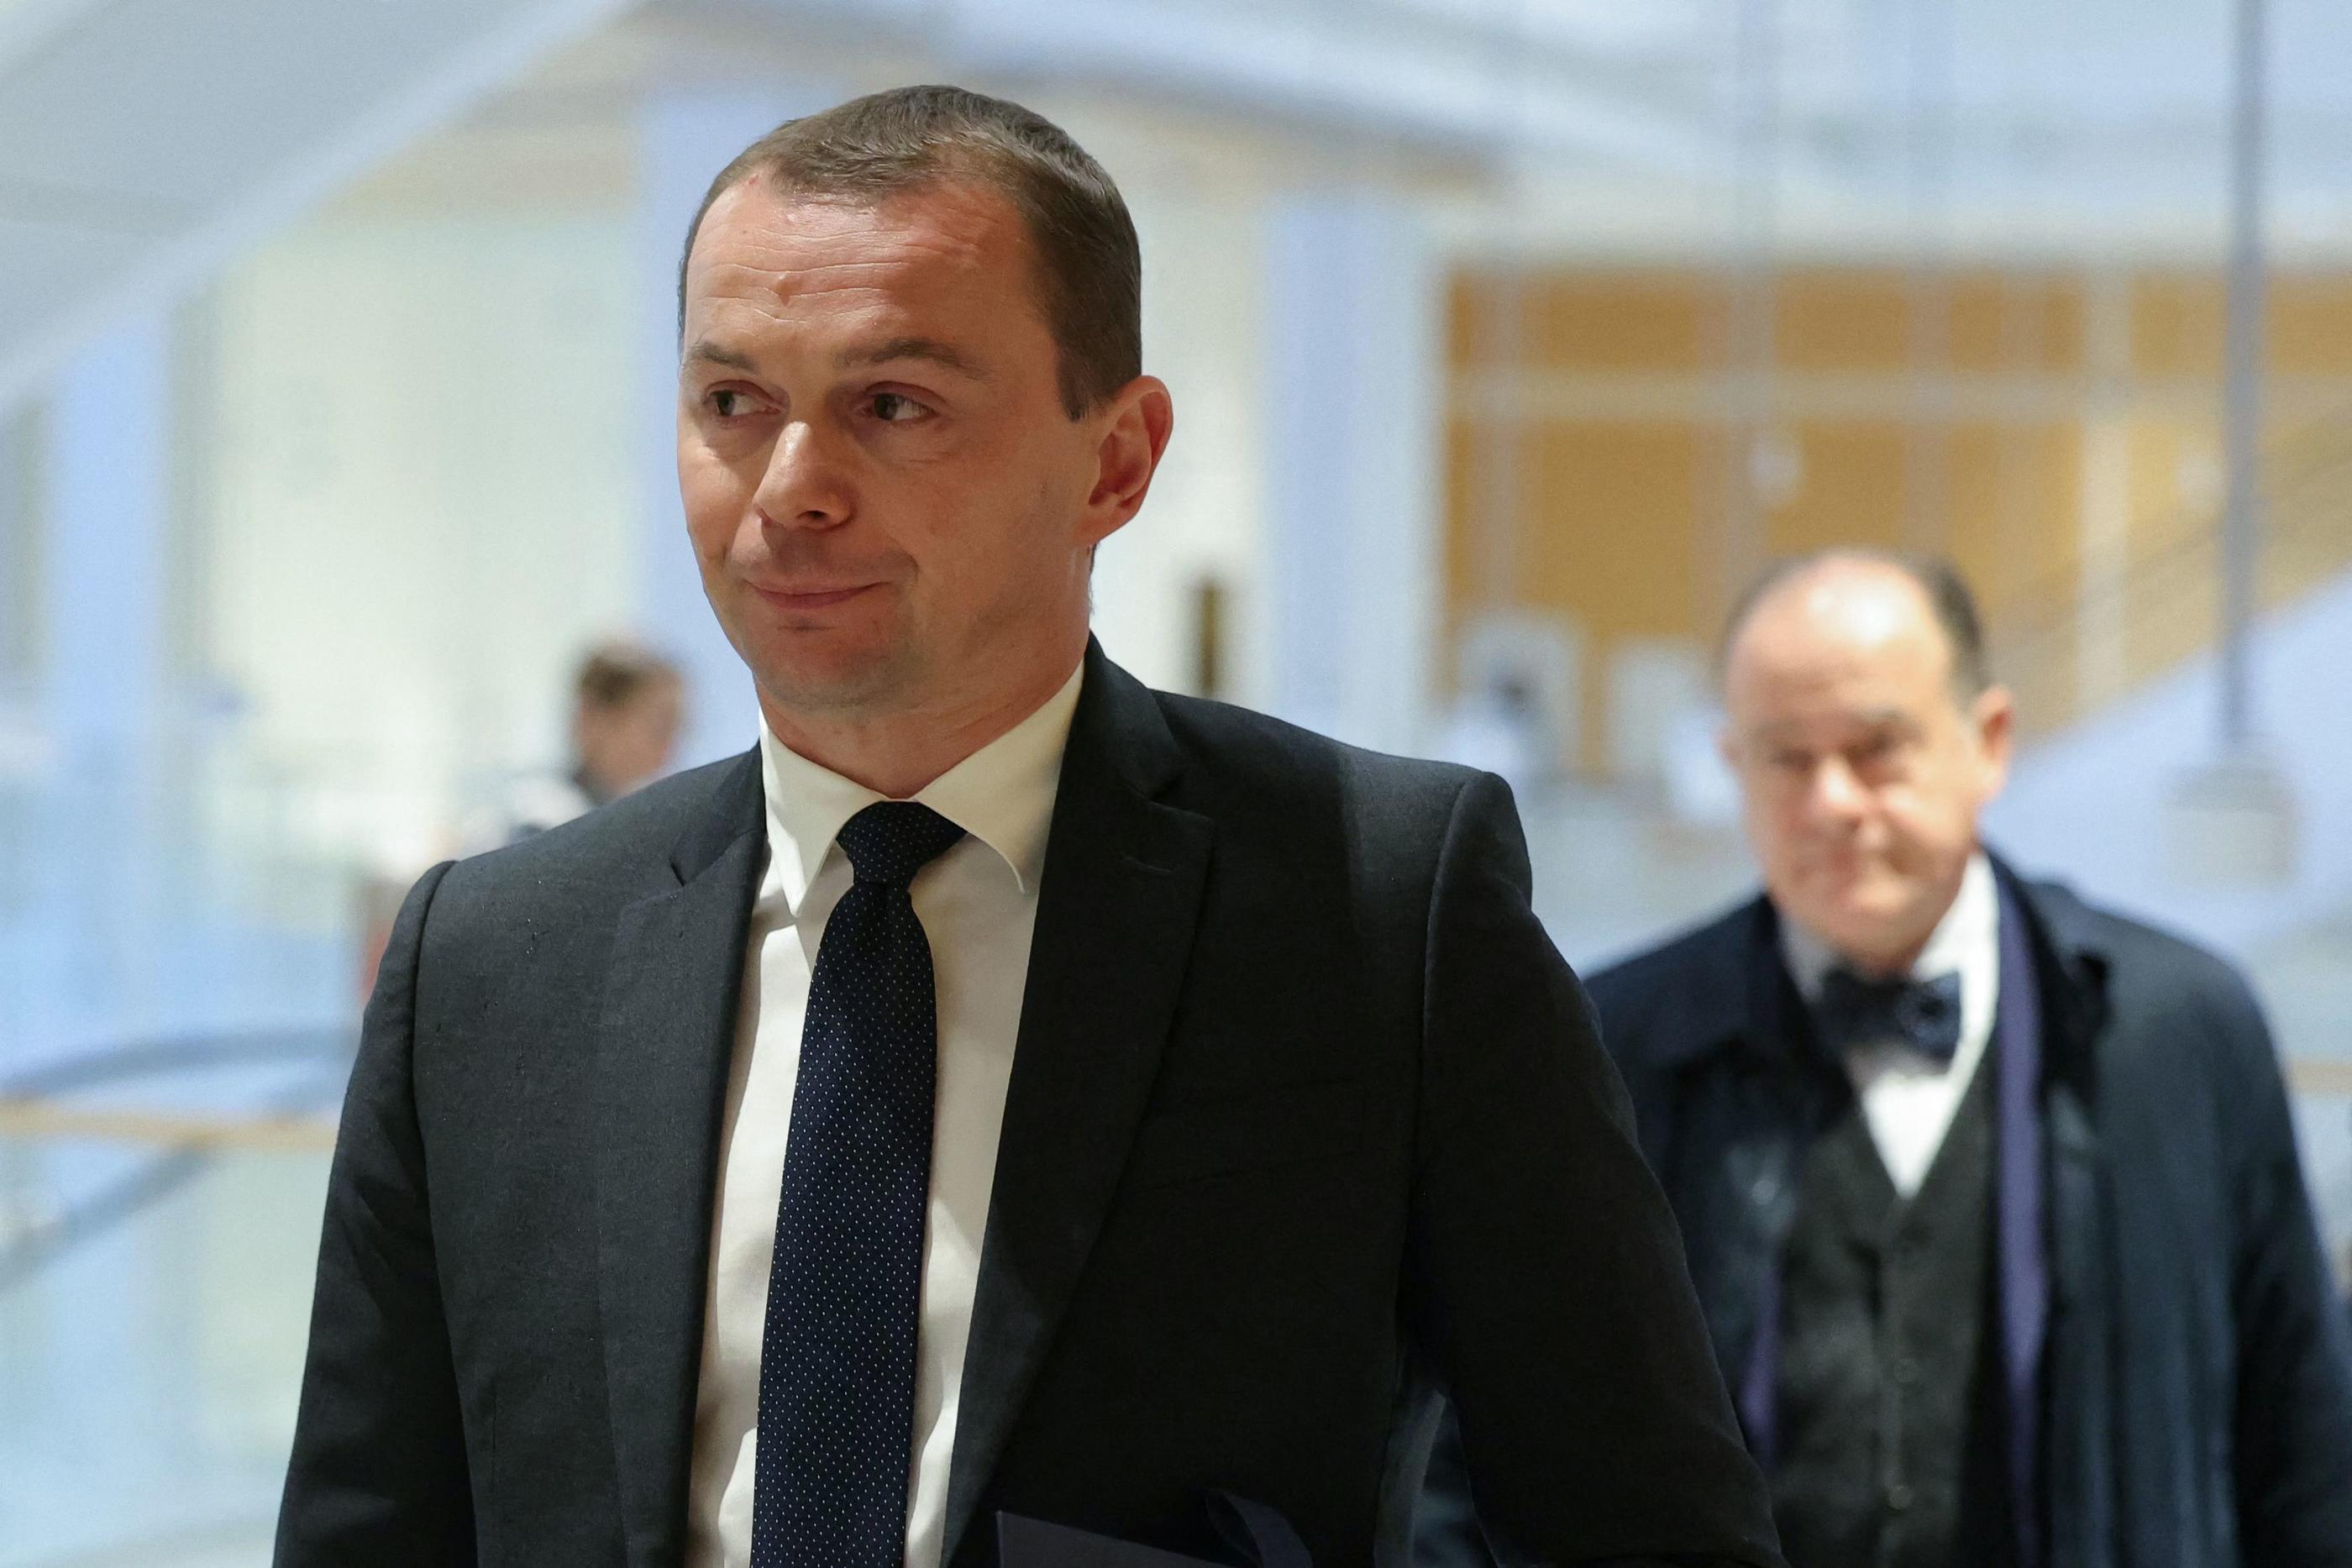 Le ministre du Travail Olivier Dussopt est jugé dans une affaire de favoritisme. AFP / Thomas Samson